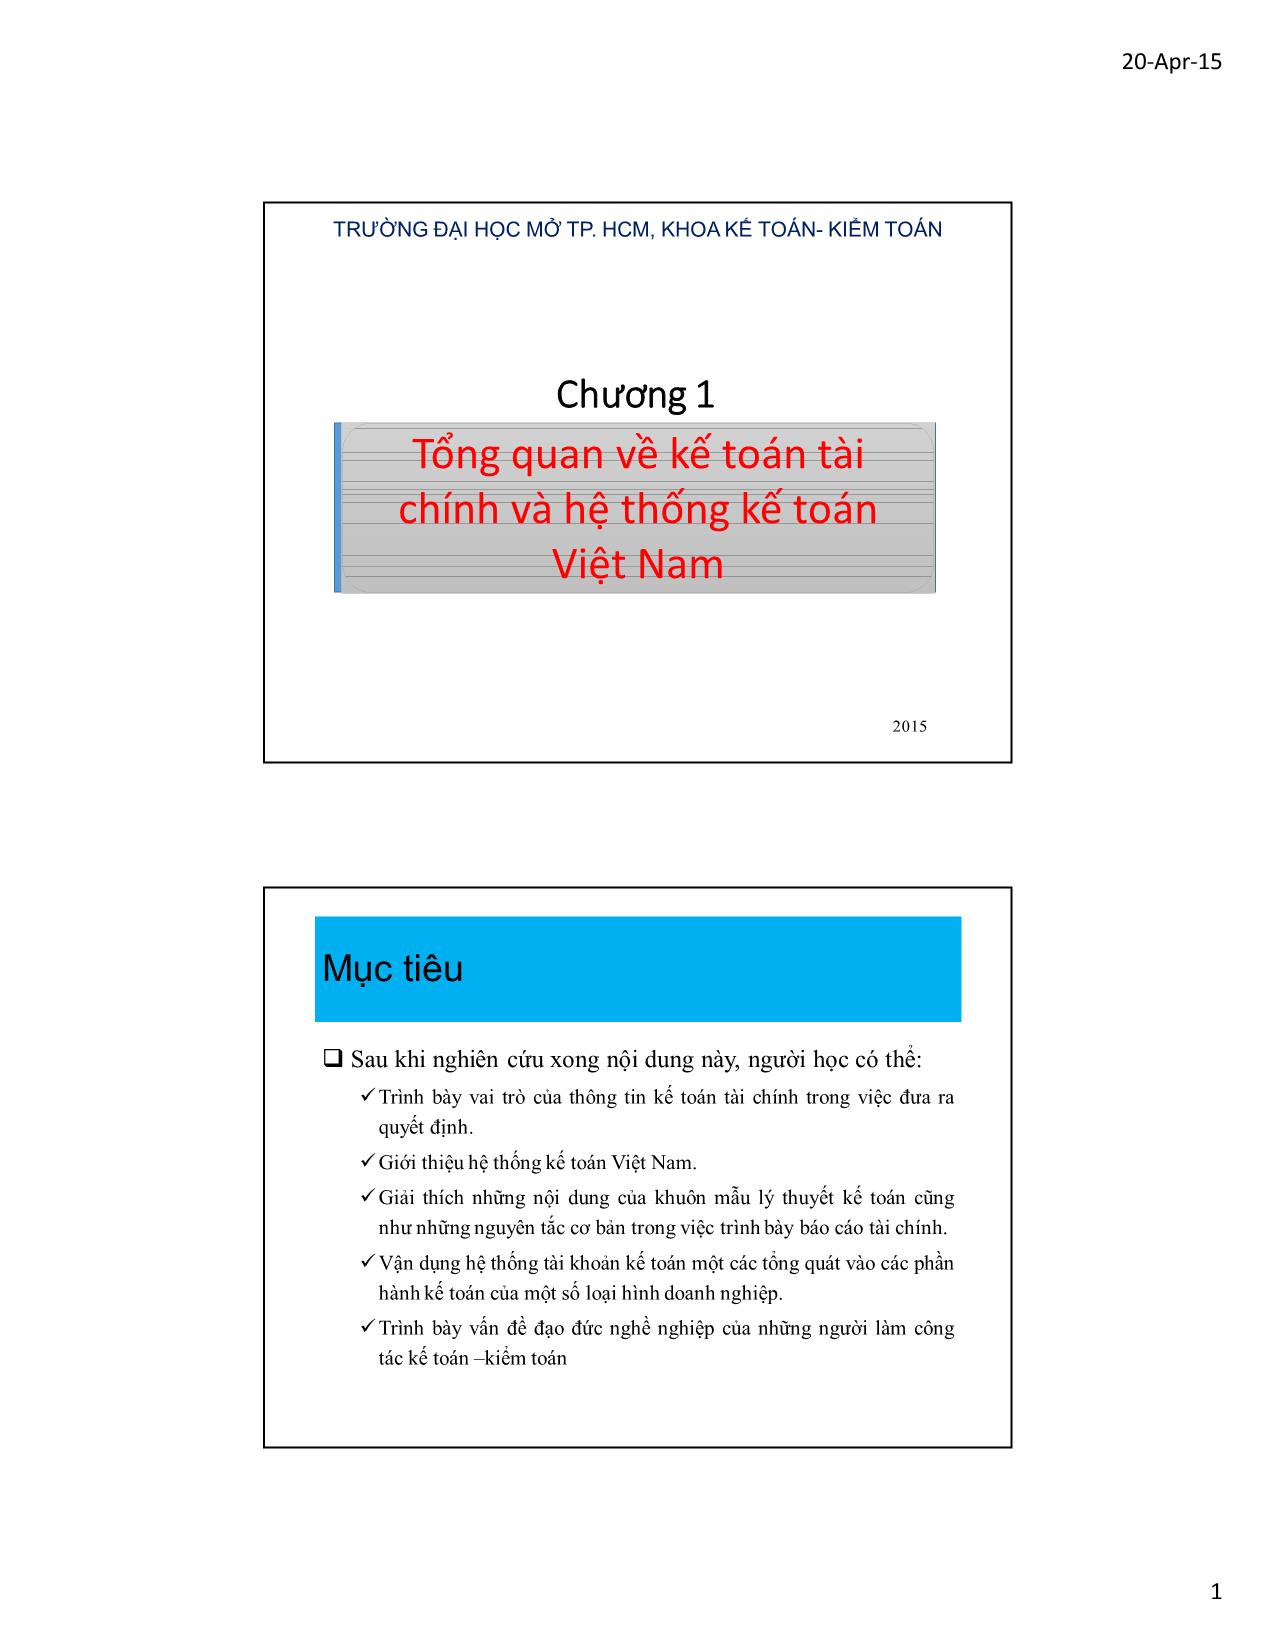 Bài giảng Kế toán tài chính và hệ thống kế toán Việt Nam 1 - Chương 1: Tổng quan về kế toán tài chính và hệ thống kế toán Việt Nam trang 1